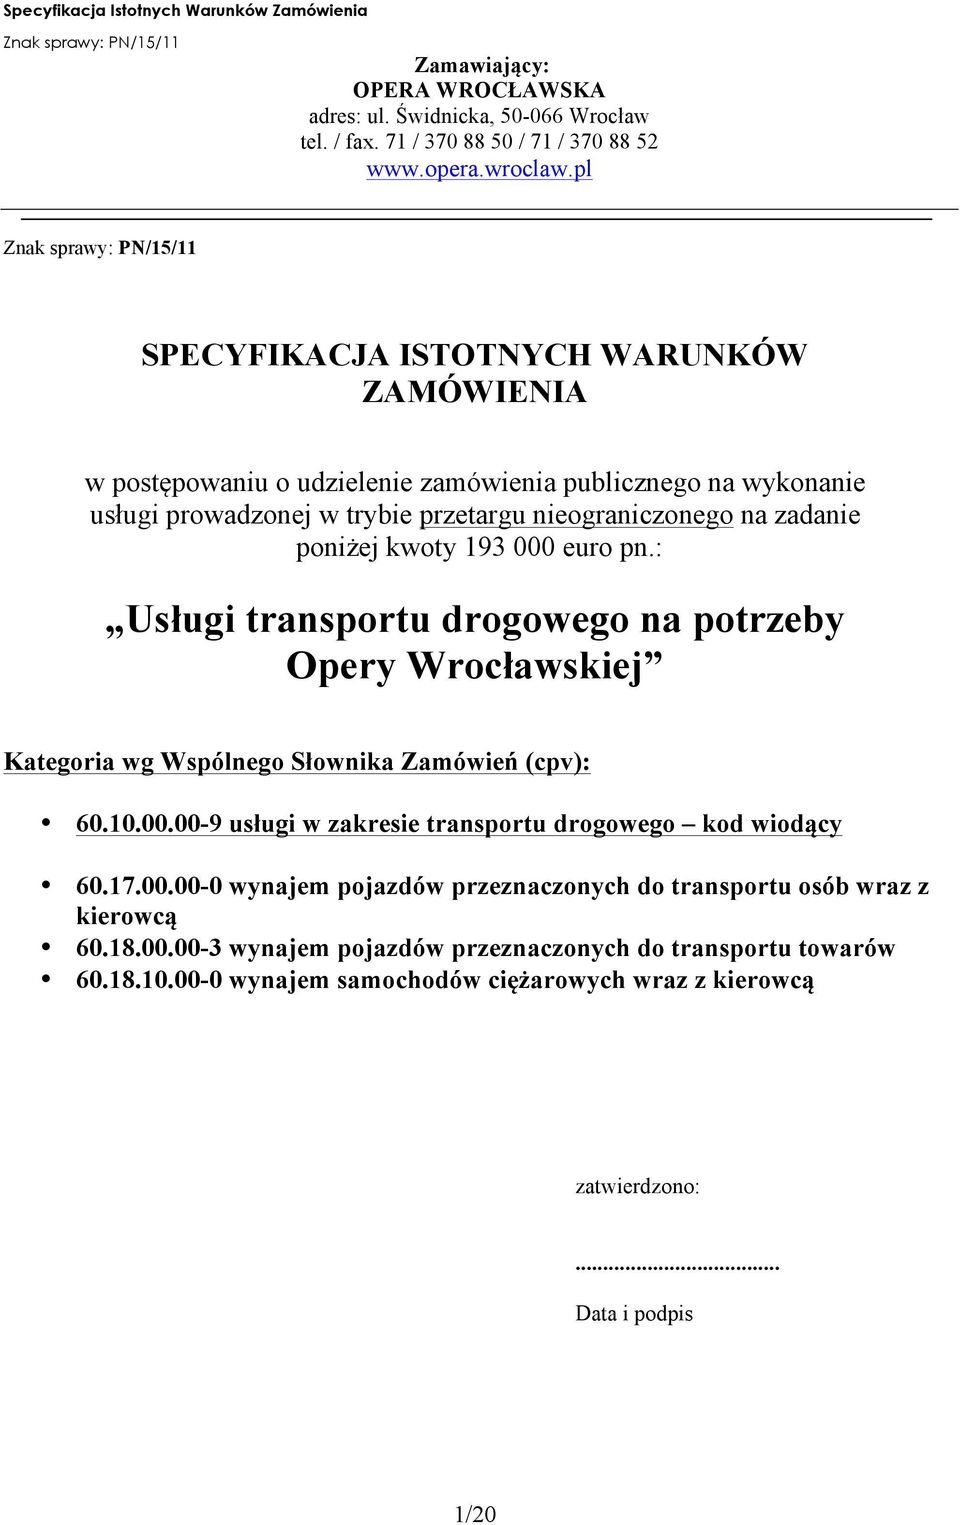 kwoty 193 000 euro pn.: Usługi transportu drogowego na potrzeby Opery Wrocławskiej Kategoria wg Wspólnego Słownika Zamówień (cpv): 60.10.00.00-9 usługi w zakresie transportu drogowego kod wiodący 60.